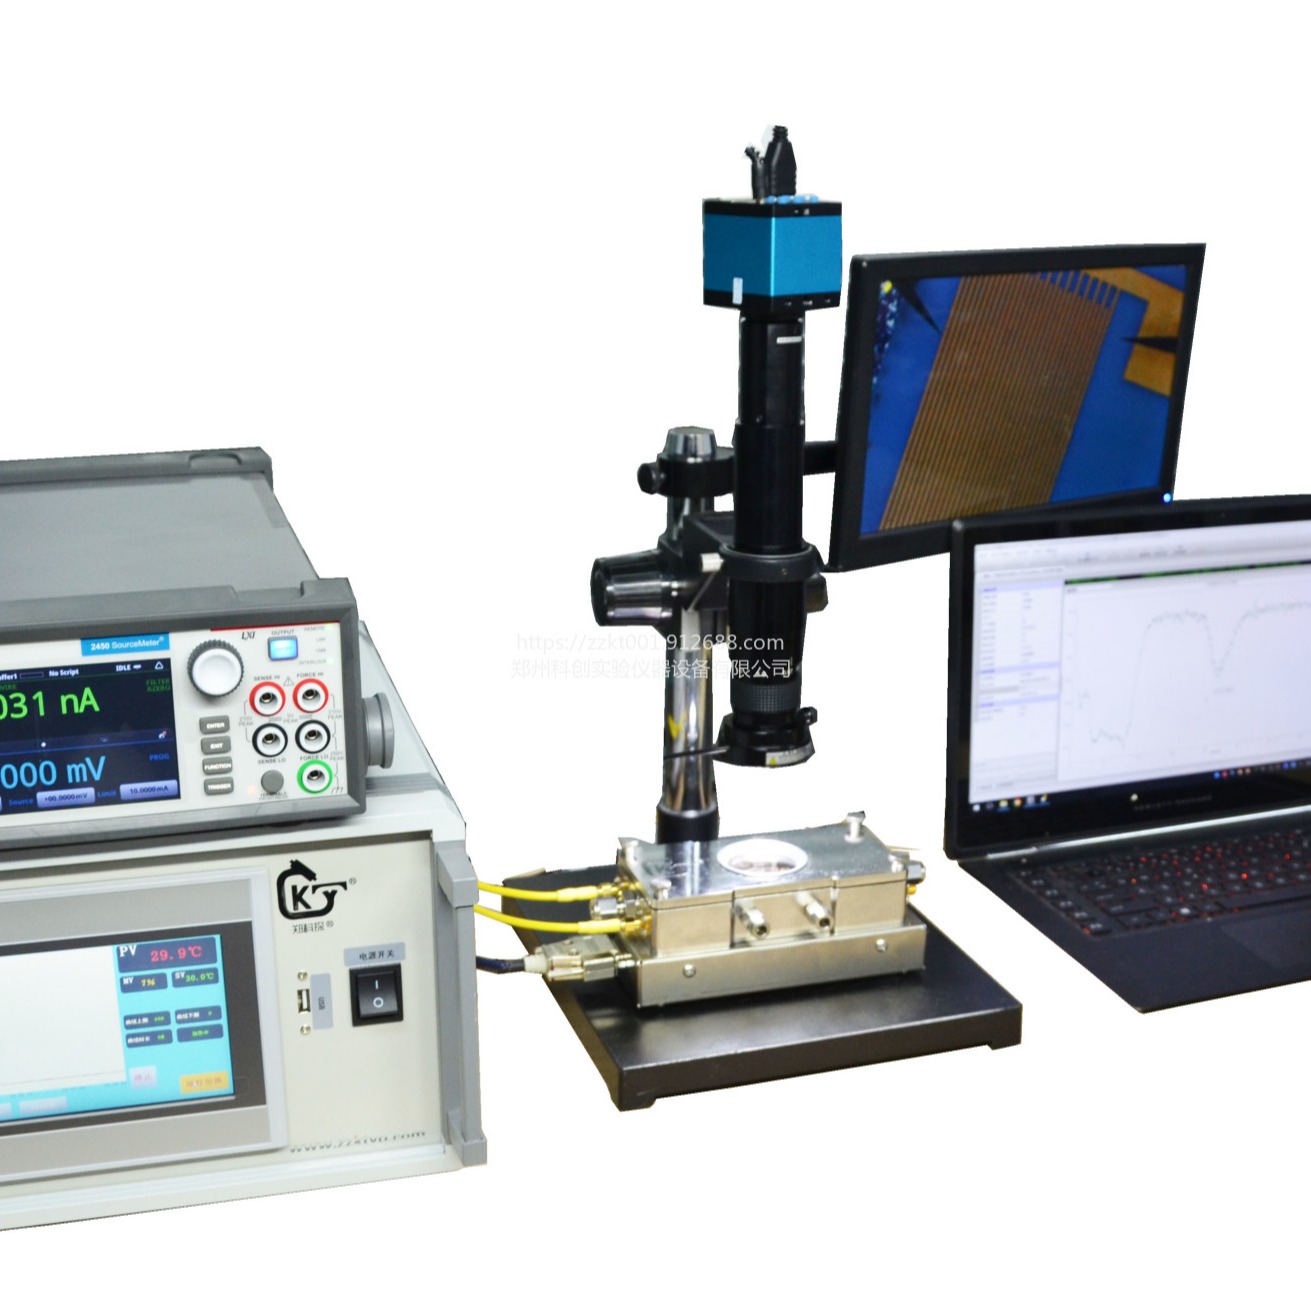 1000度高温显微镜热台 高温探针台  功能材料及元器件的研发 微电子技术与工艺研究